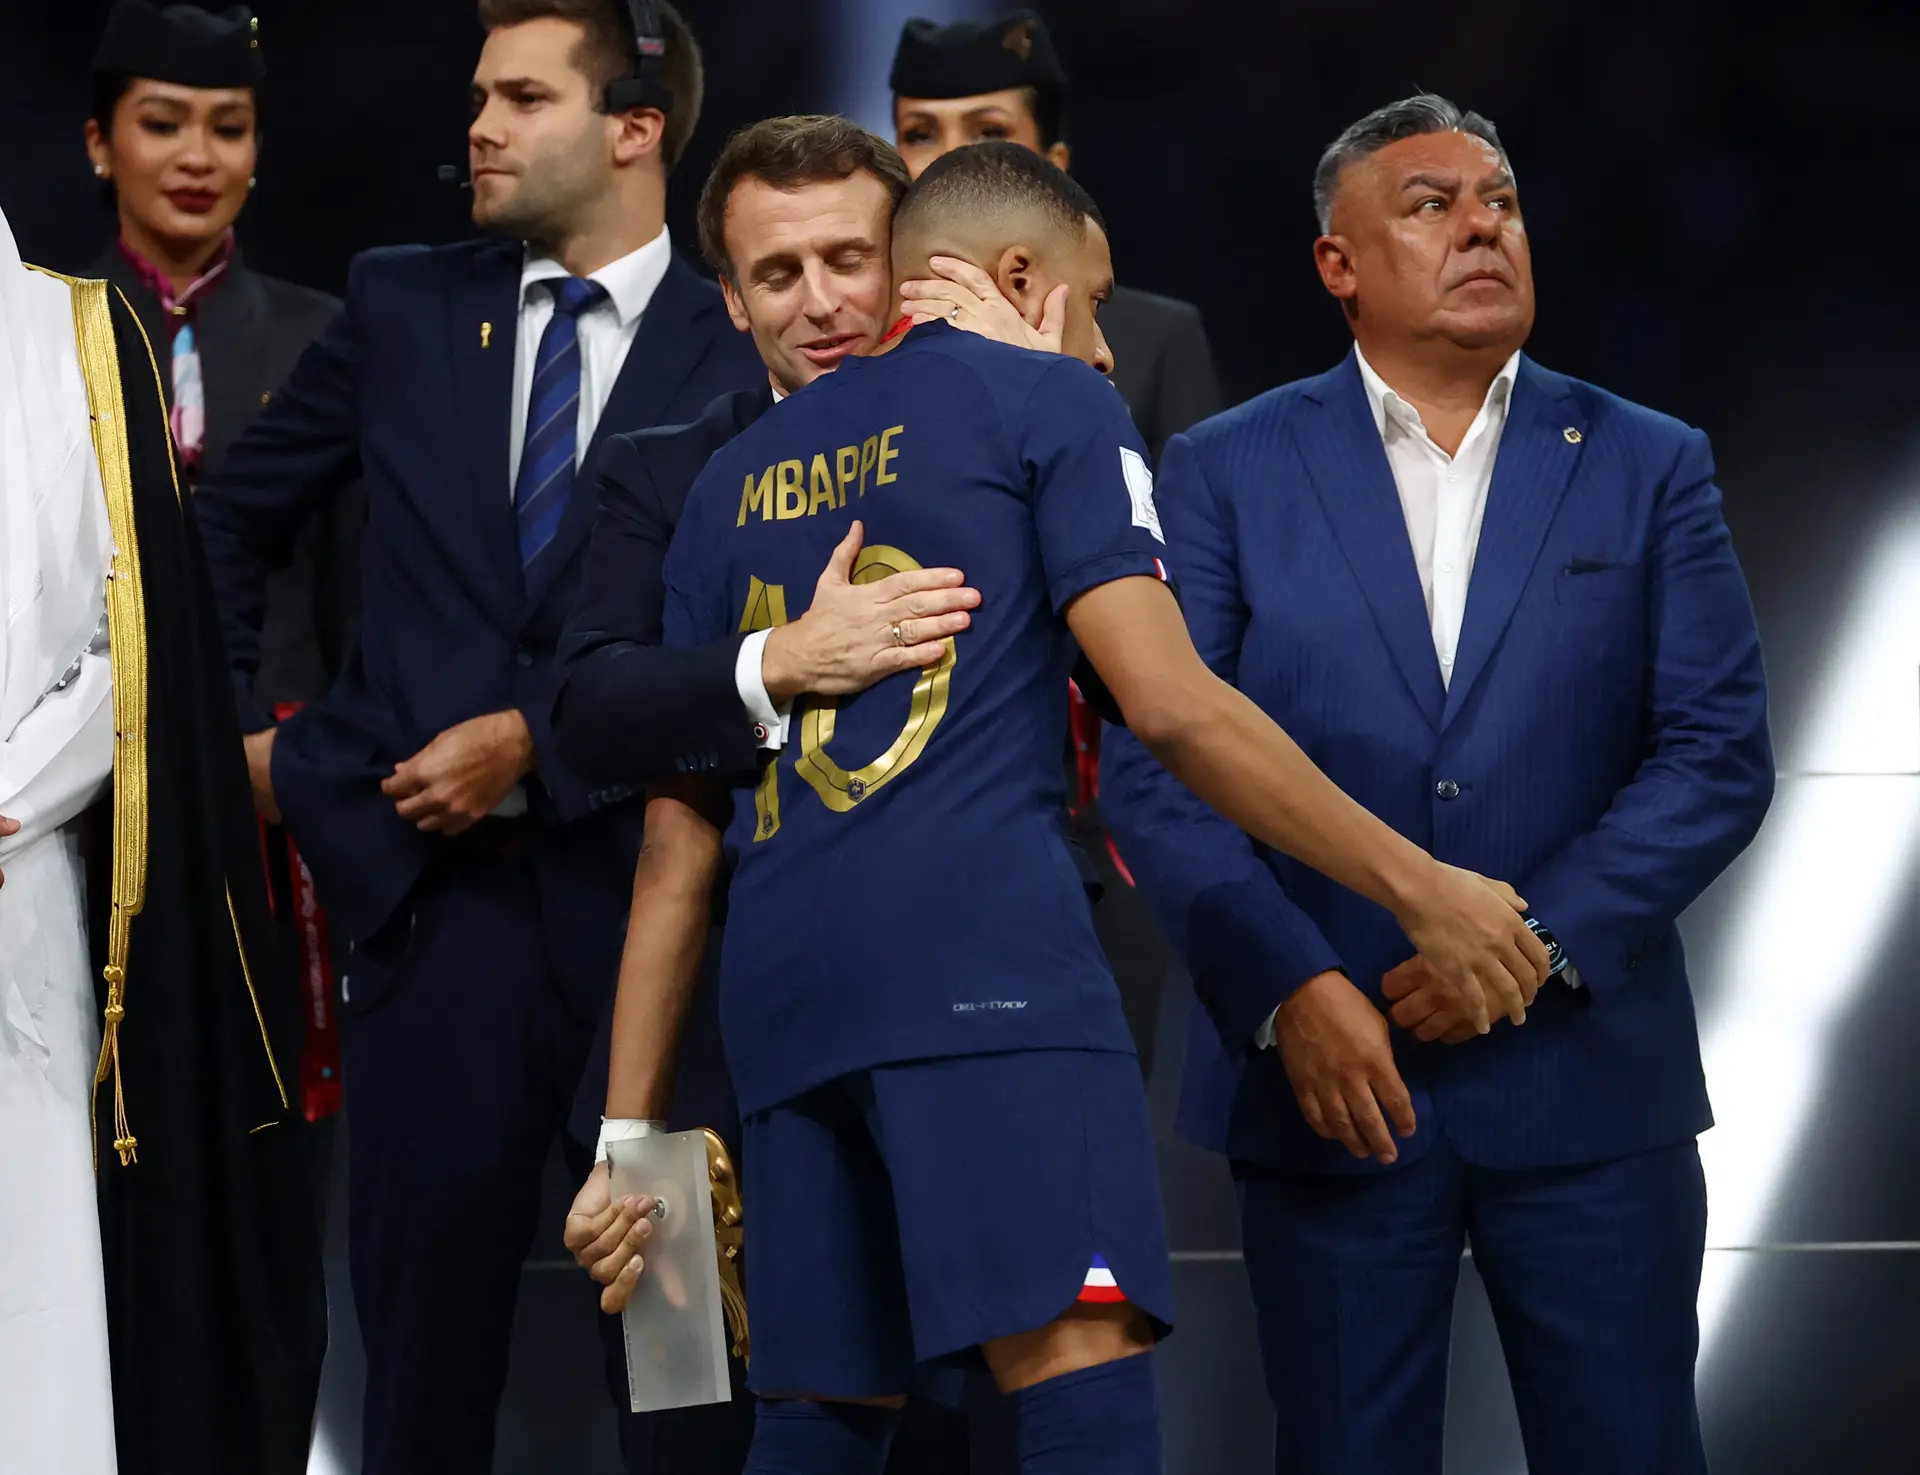 Mundial 2022: Macron saúda seleção e afirma que “azuis” fizeram sonhar a França